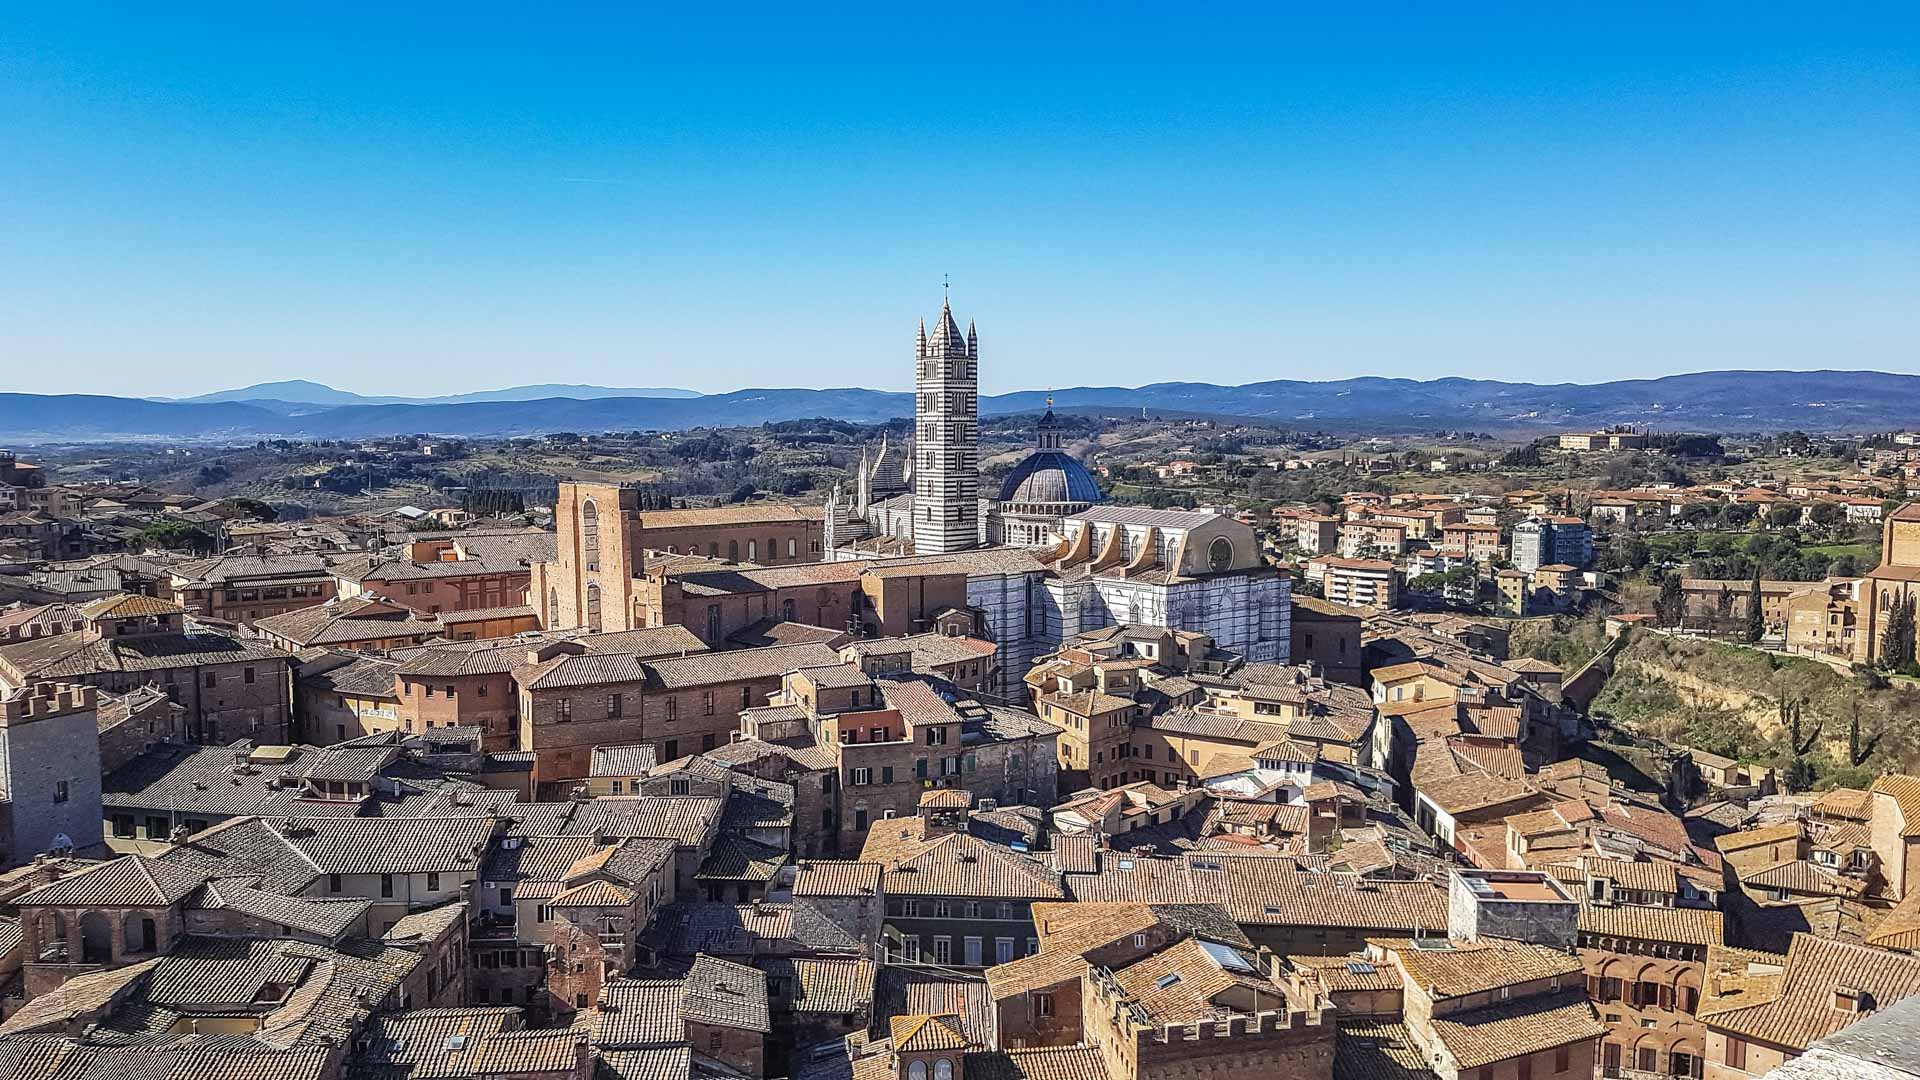 Una meravigliosa vista completa su tutta Siena con al centro della foto la bellissima cattedrale. Sullo sfondo colline e montagne. La città è sicuramente una delle mete da vedere in un giorno di vacanza!